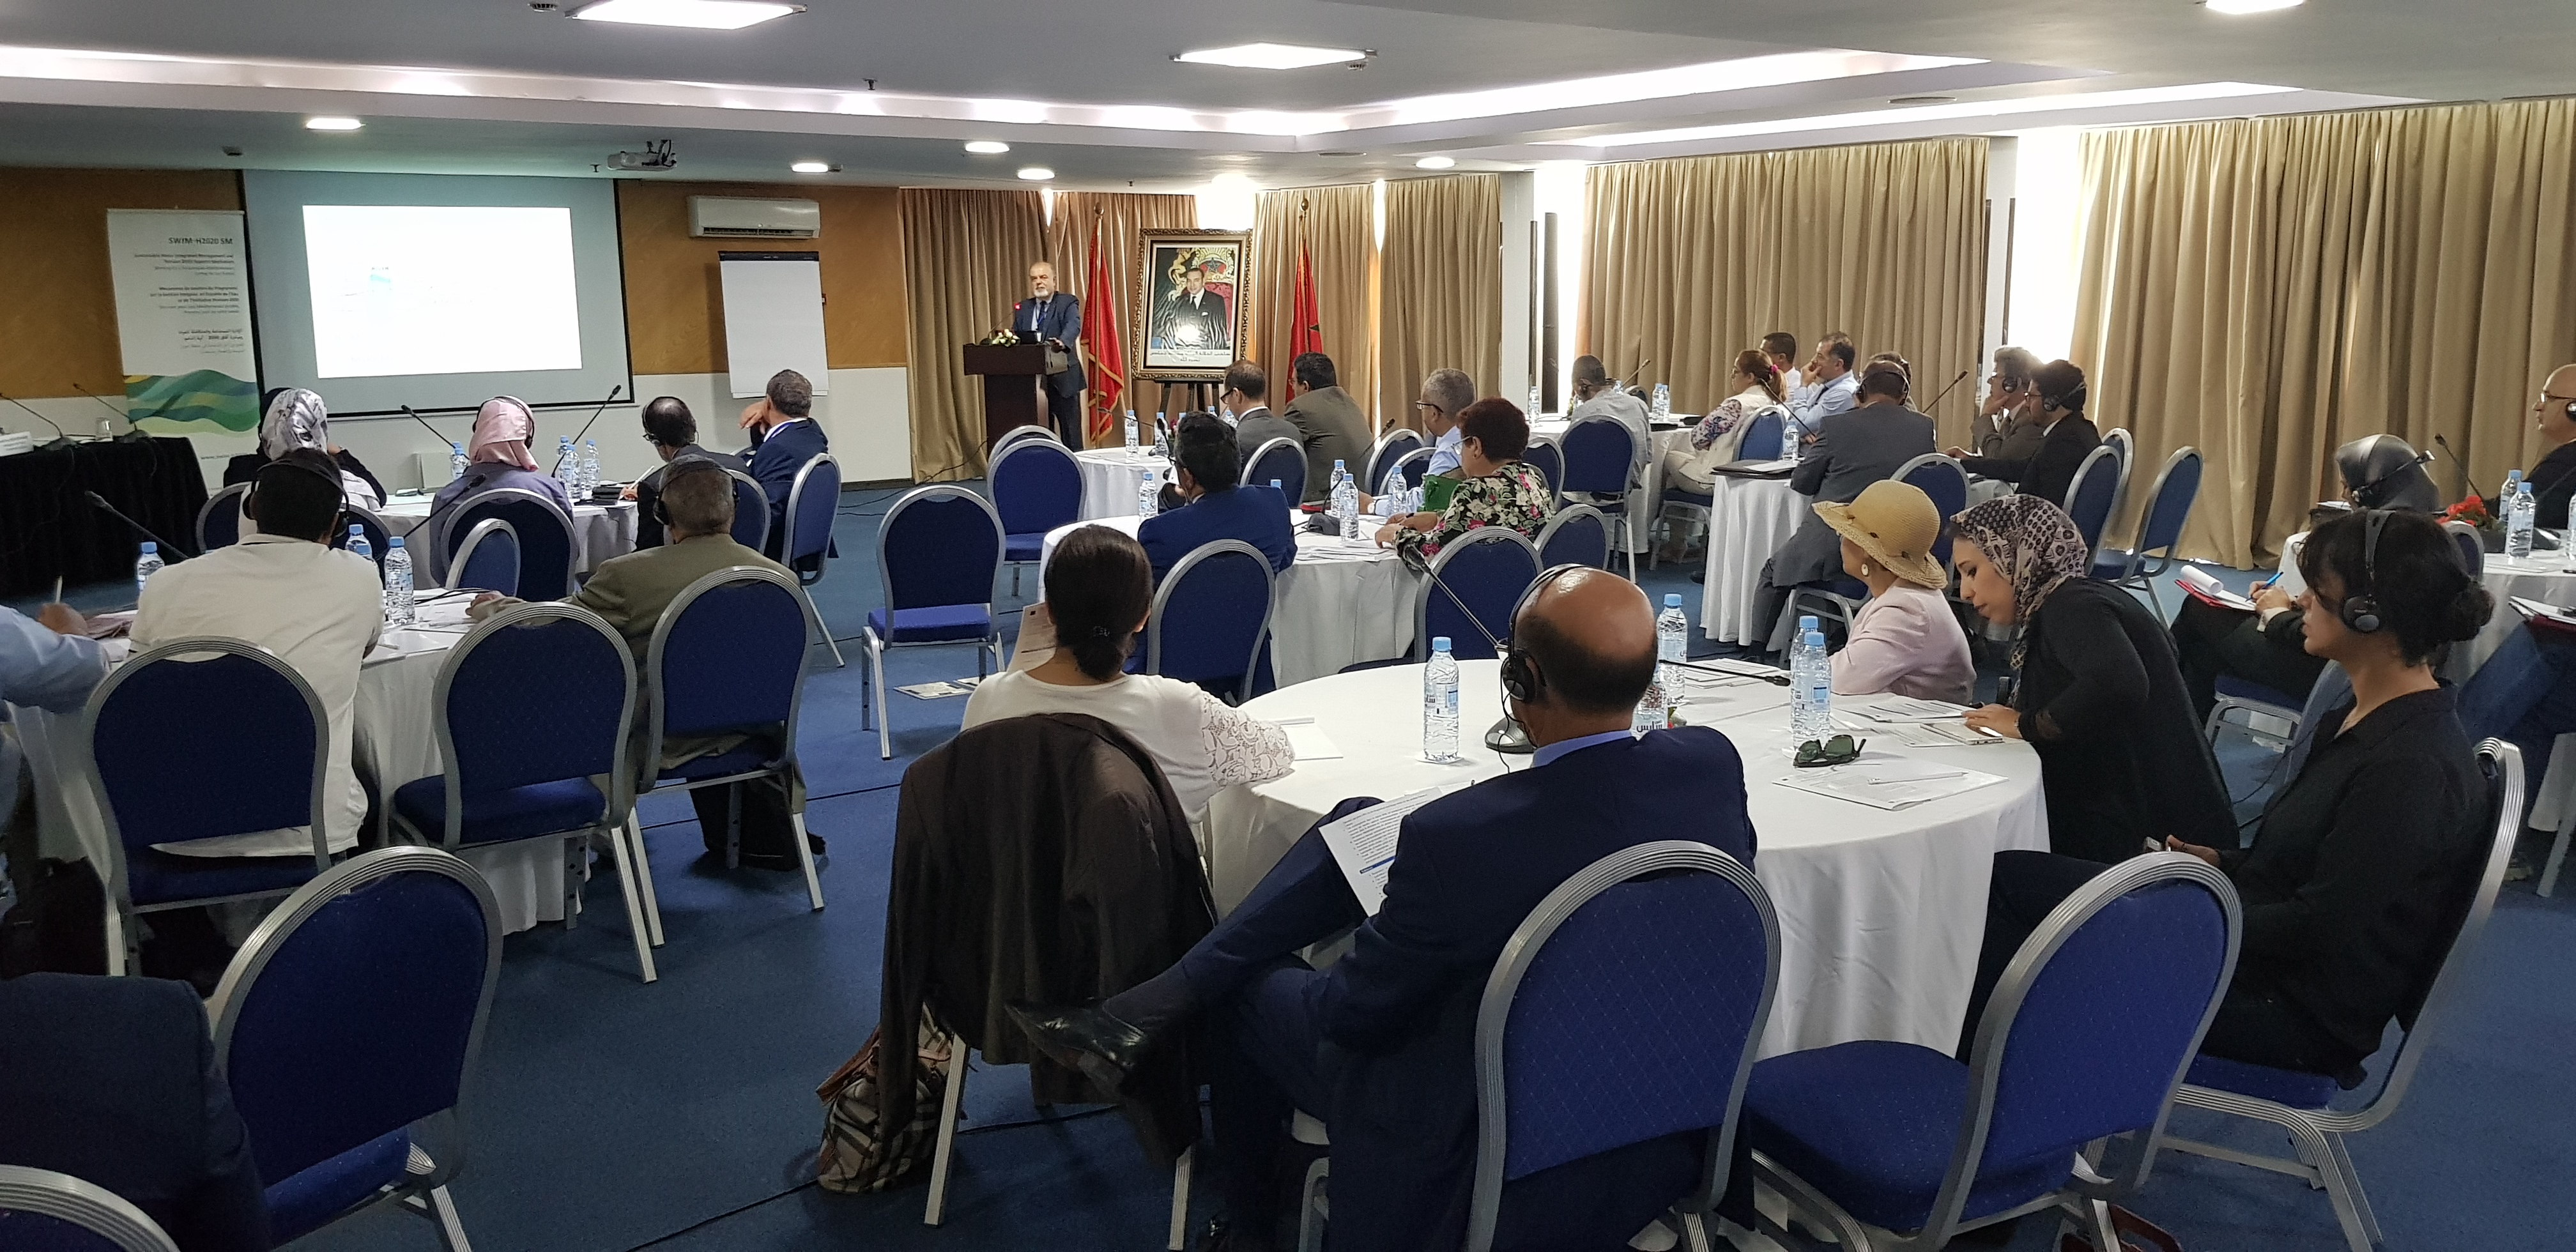 17-18 septembre 2018, Rabat, Morocco – SWIM-H2020 SM Atelier de consultation du diagnostic du littoral de la région et de formulation d’une vision et d’un plan d’action pour une gestion intégrée des zones côtières